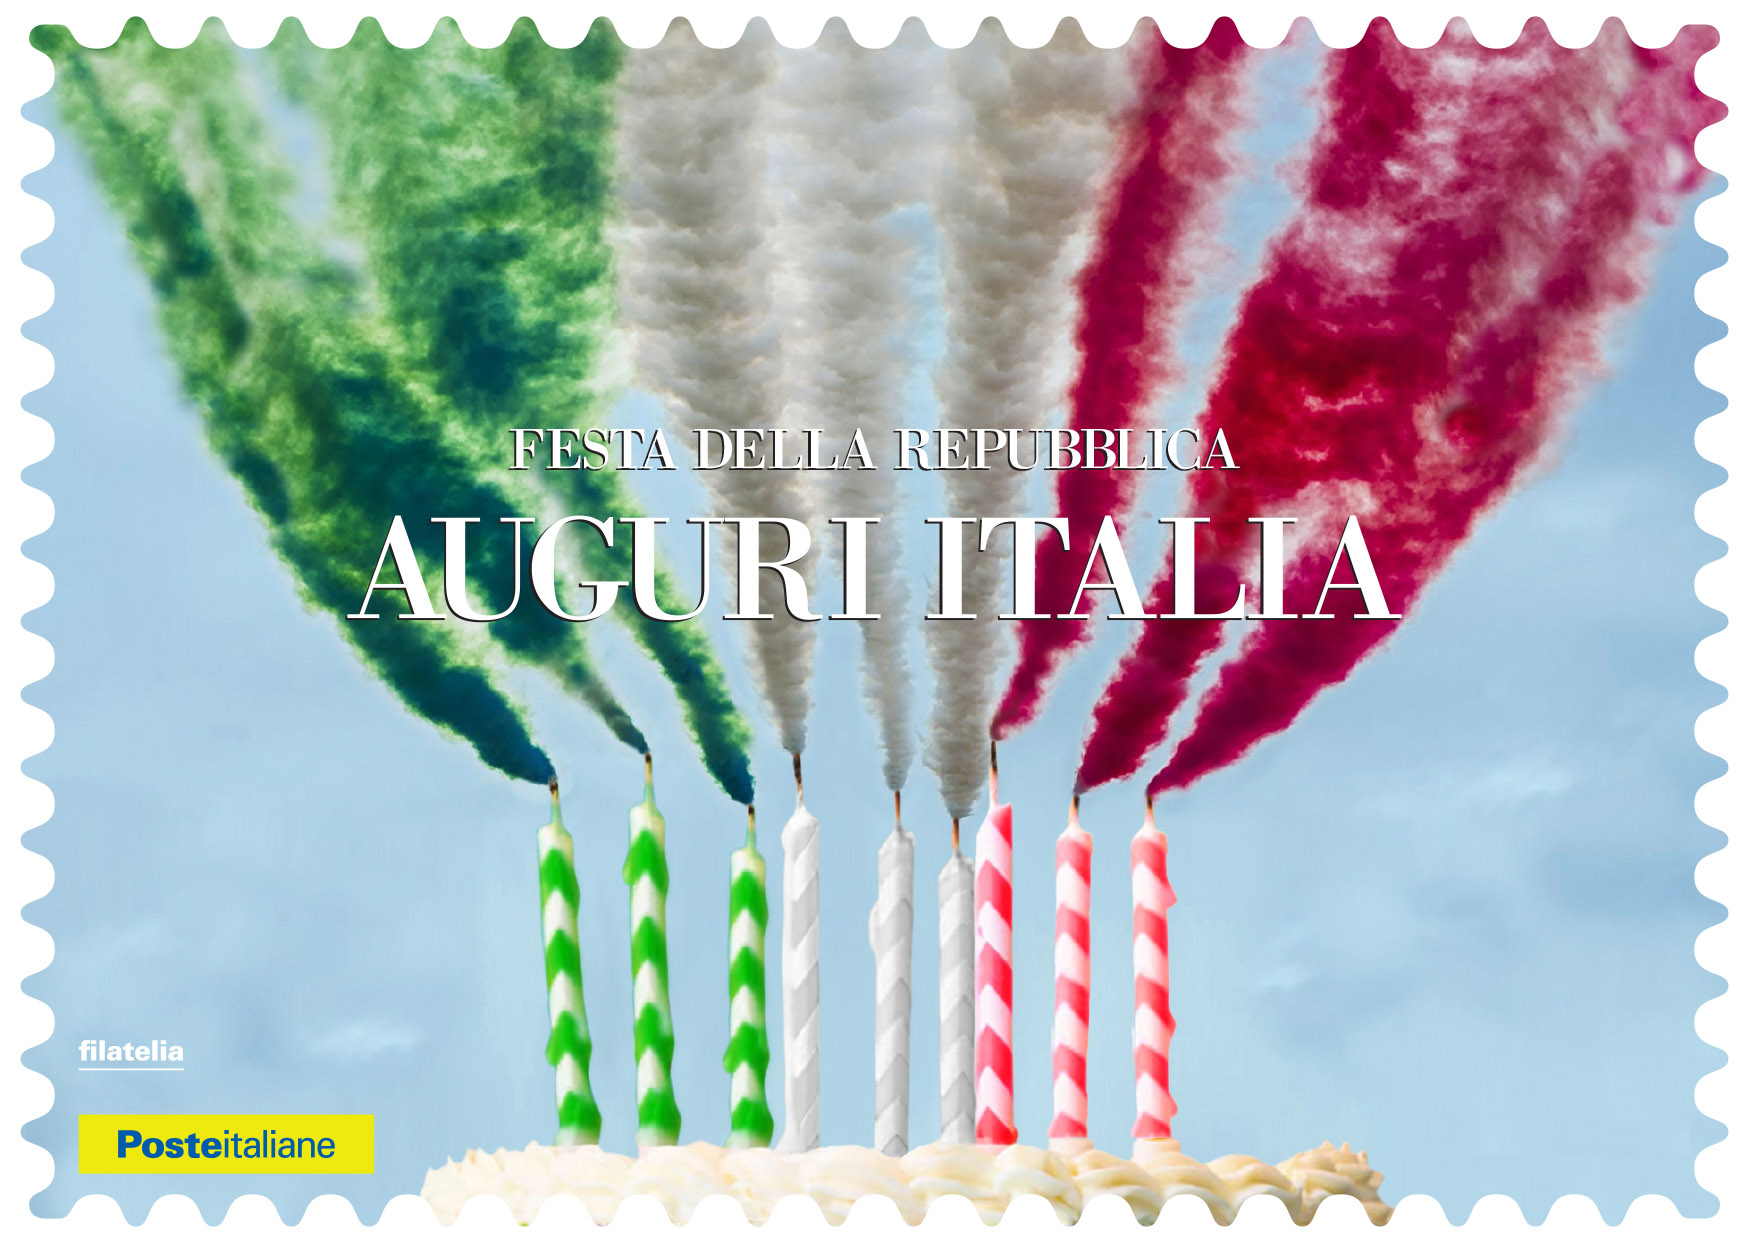 Al momento stai visualizzando La cartolina della Festa della Repubblica arrivata negli uffici postali di Udine, Pordenone, Gorizia e Trieste